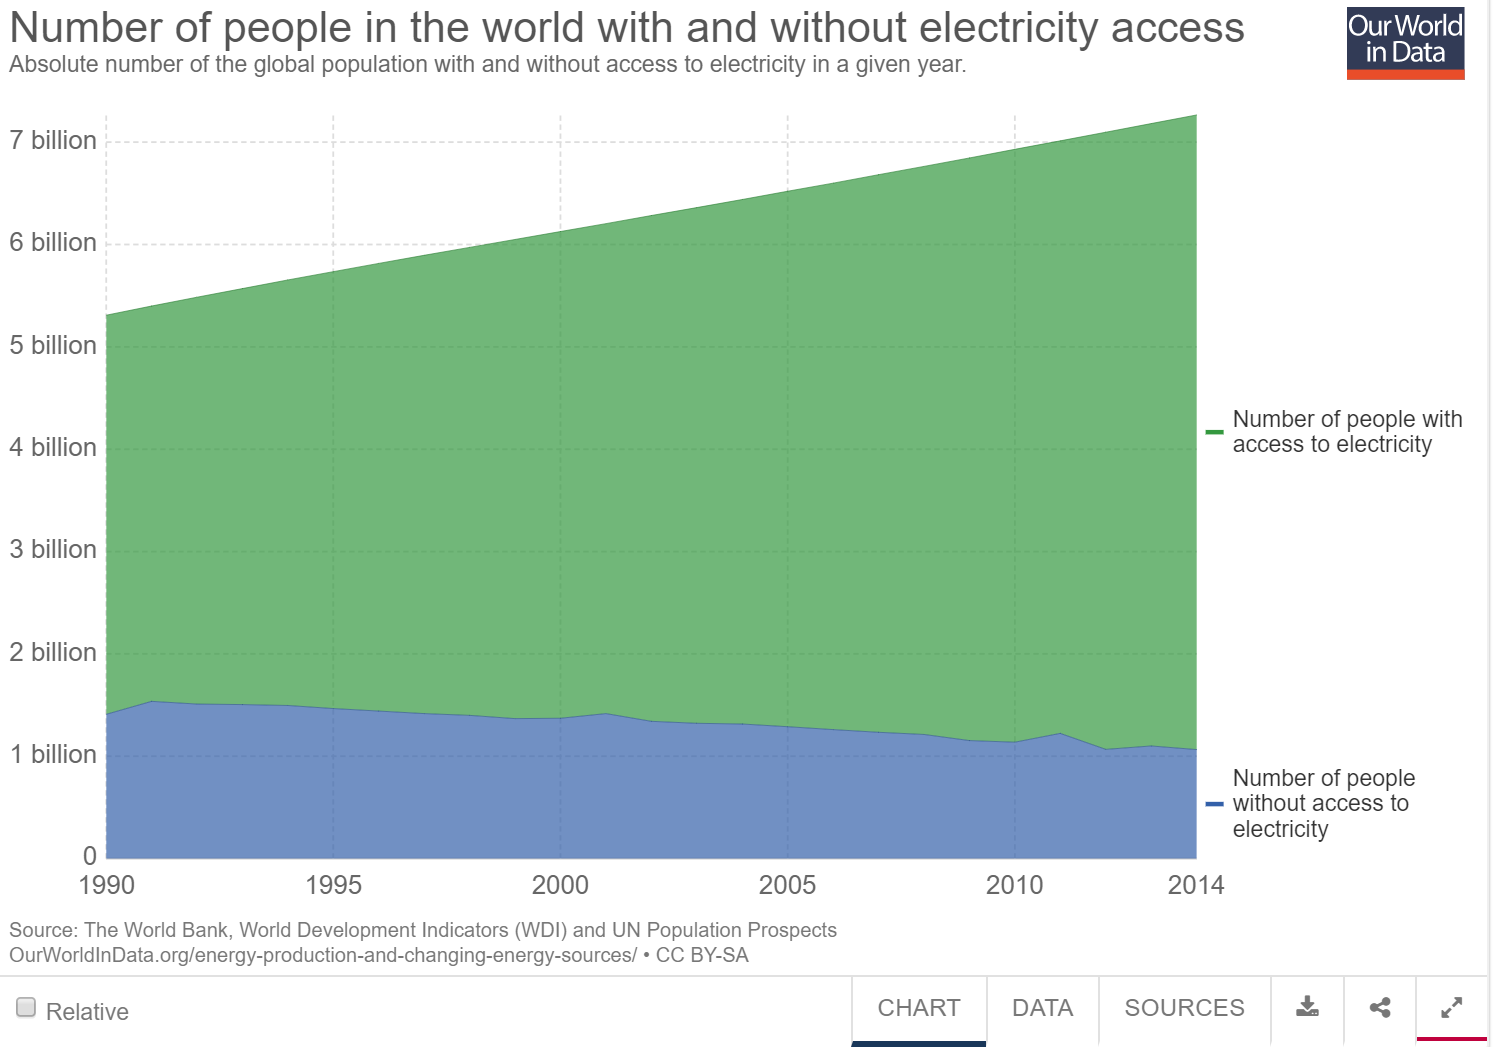 acceso-electricidad-mundo